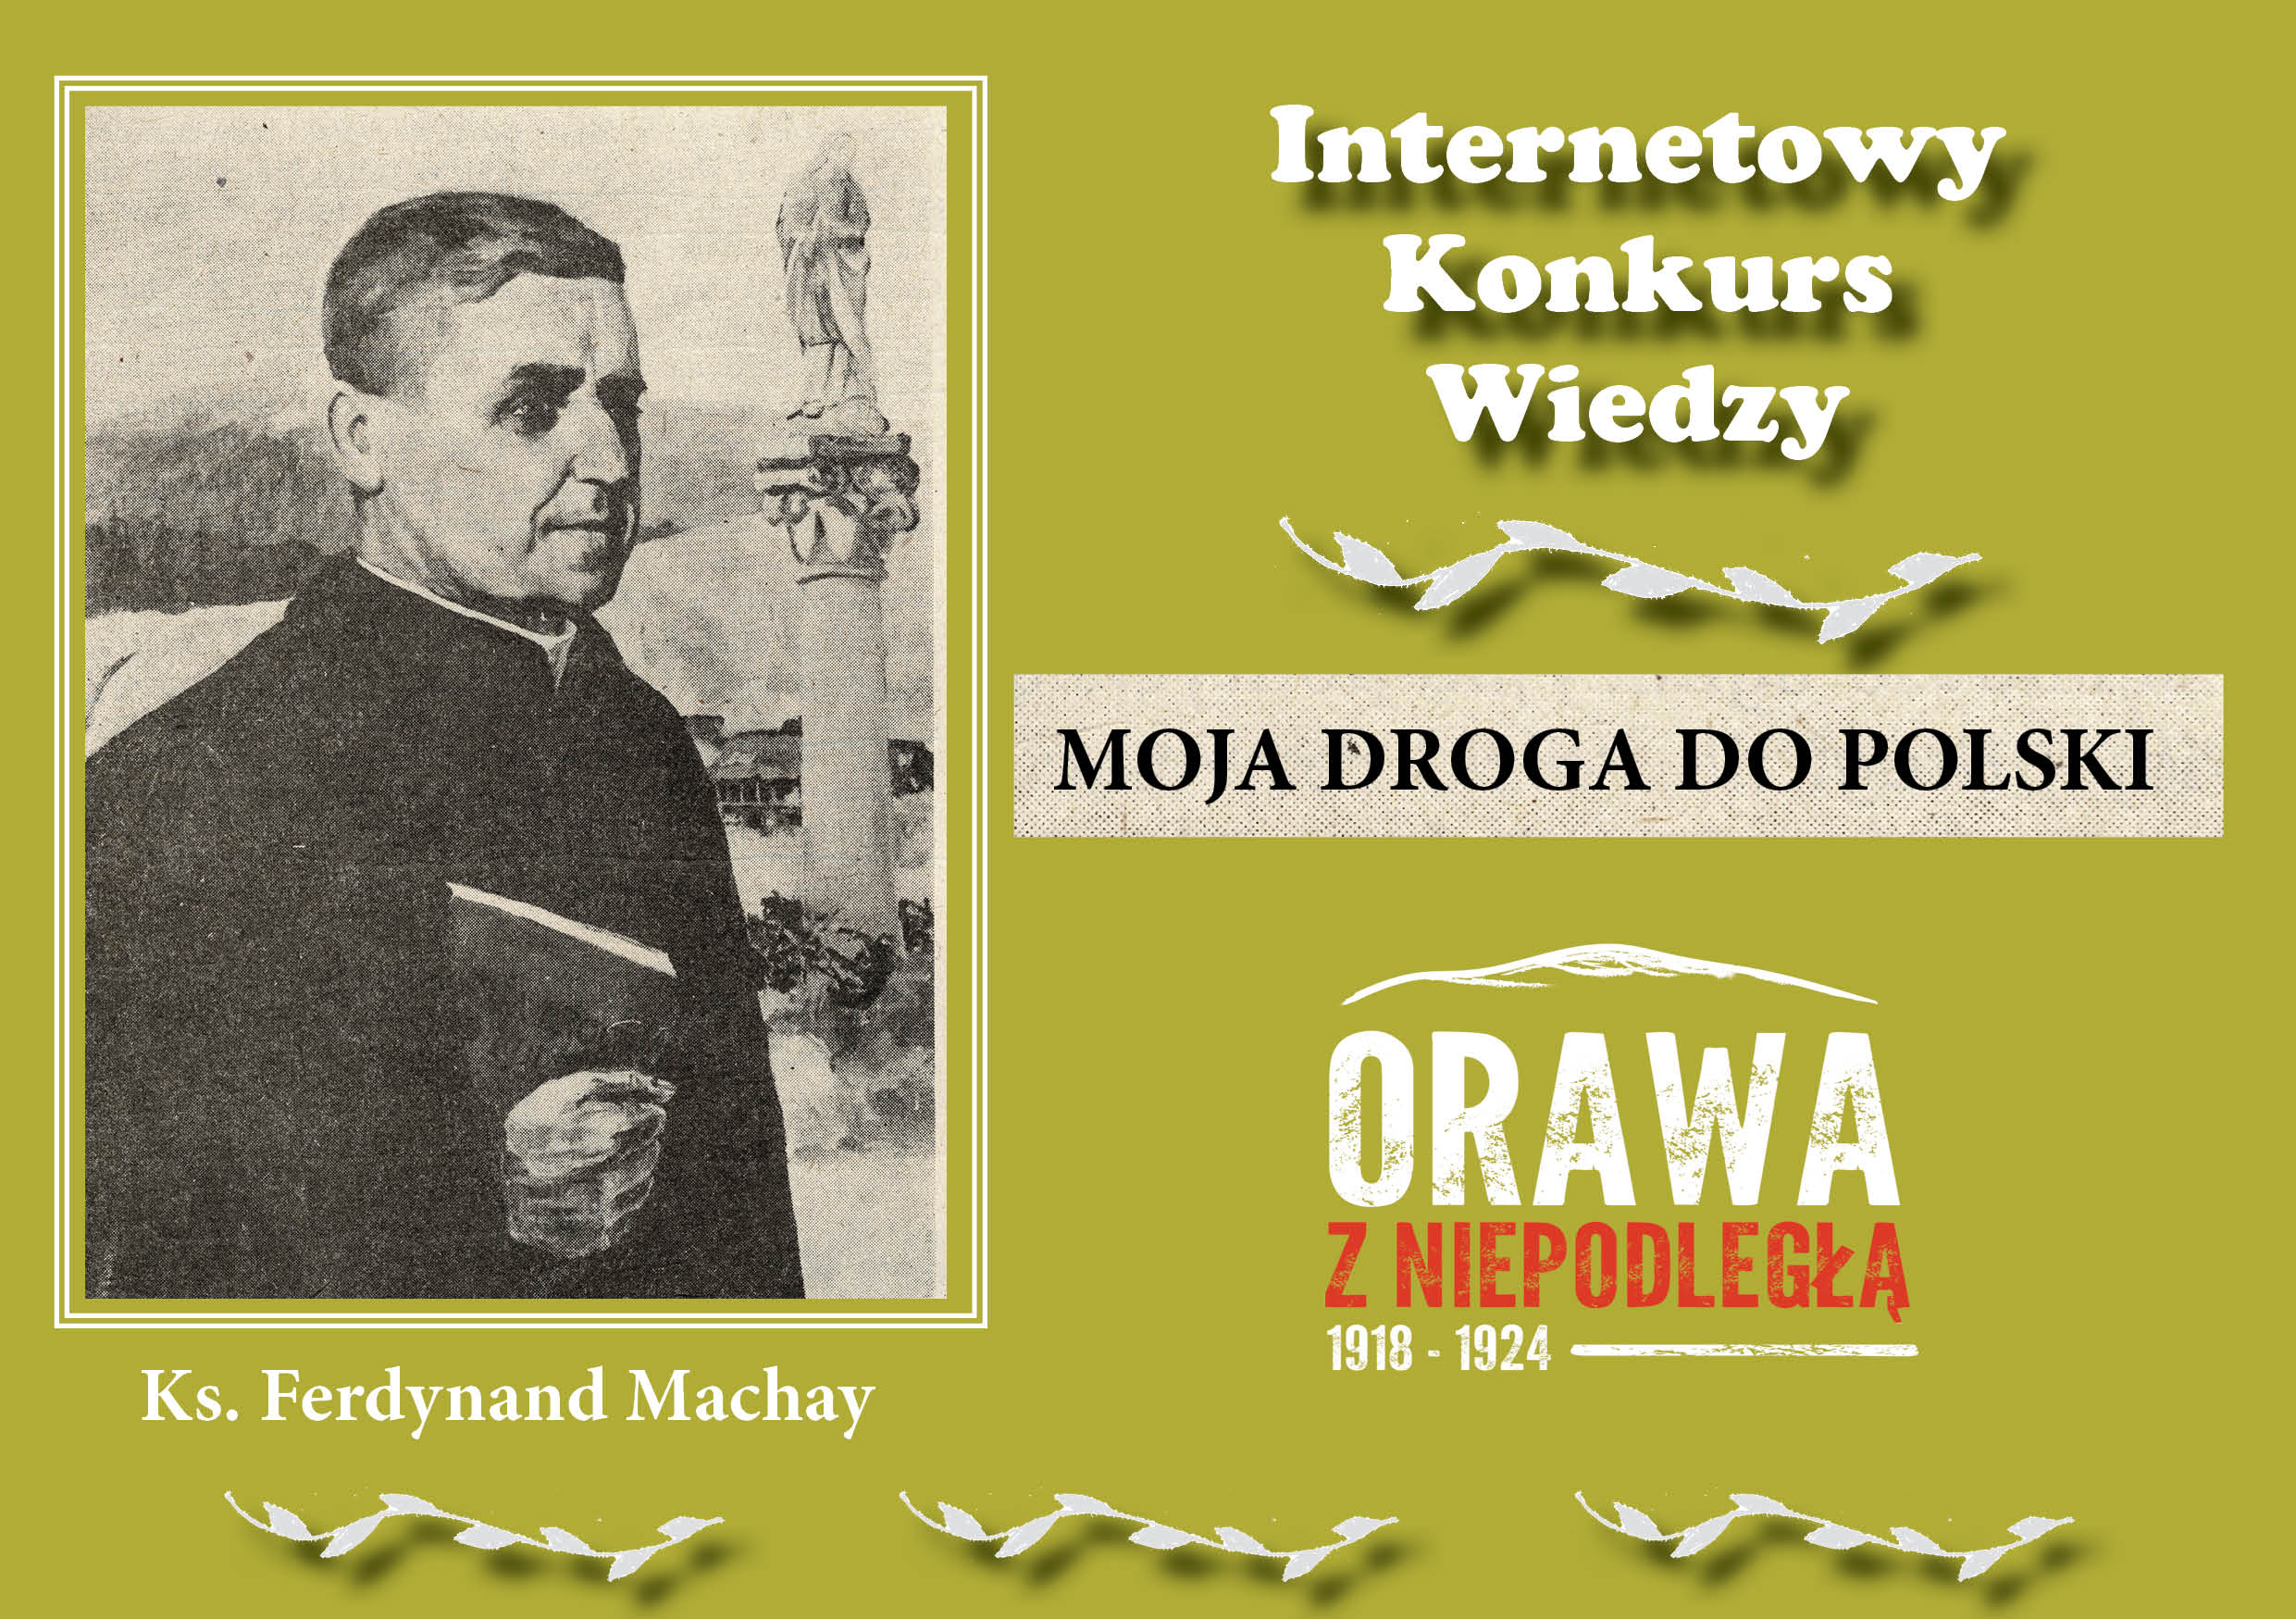 nternetowy Konkurs Wiedzy pn. „Moja droga do Polski” - plakat